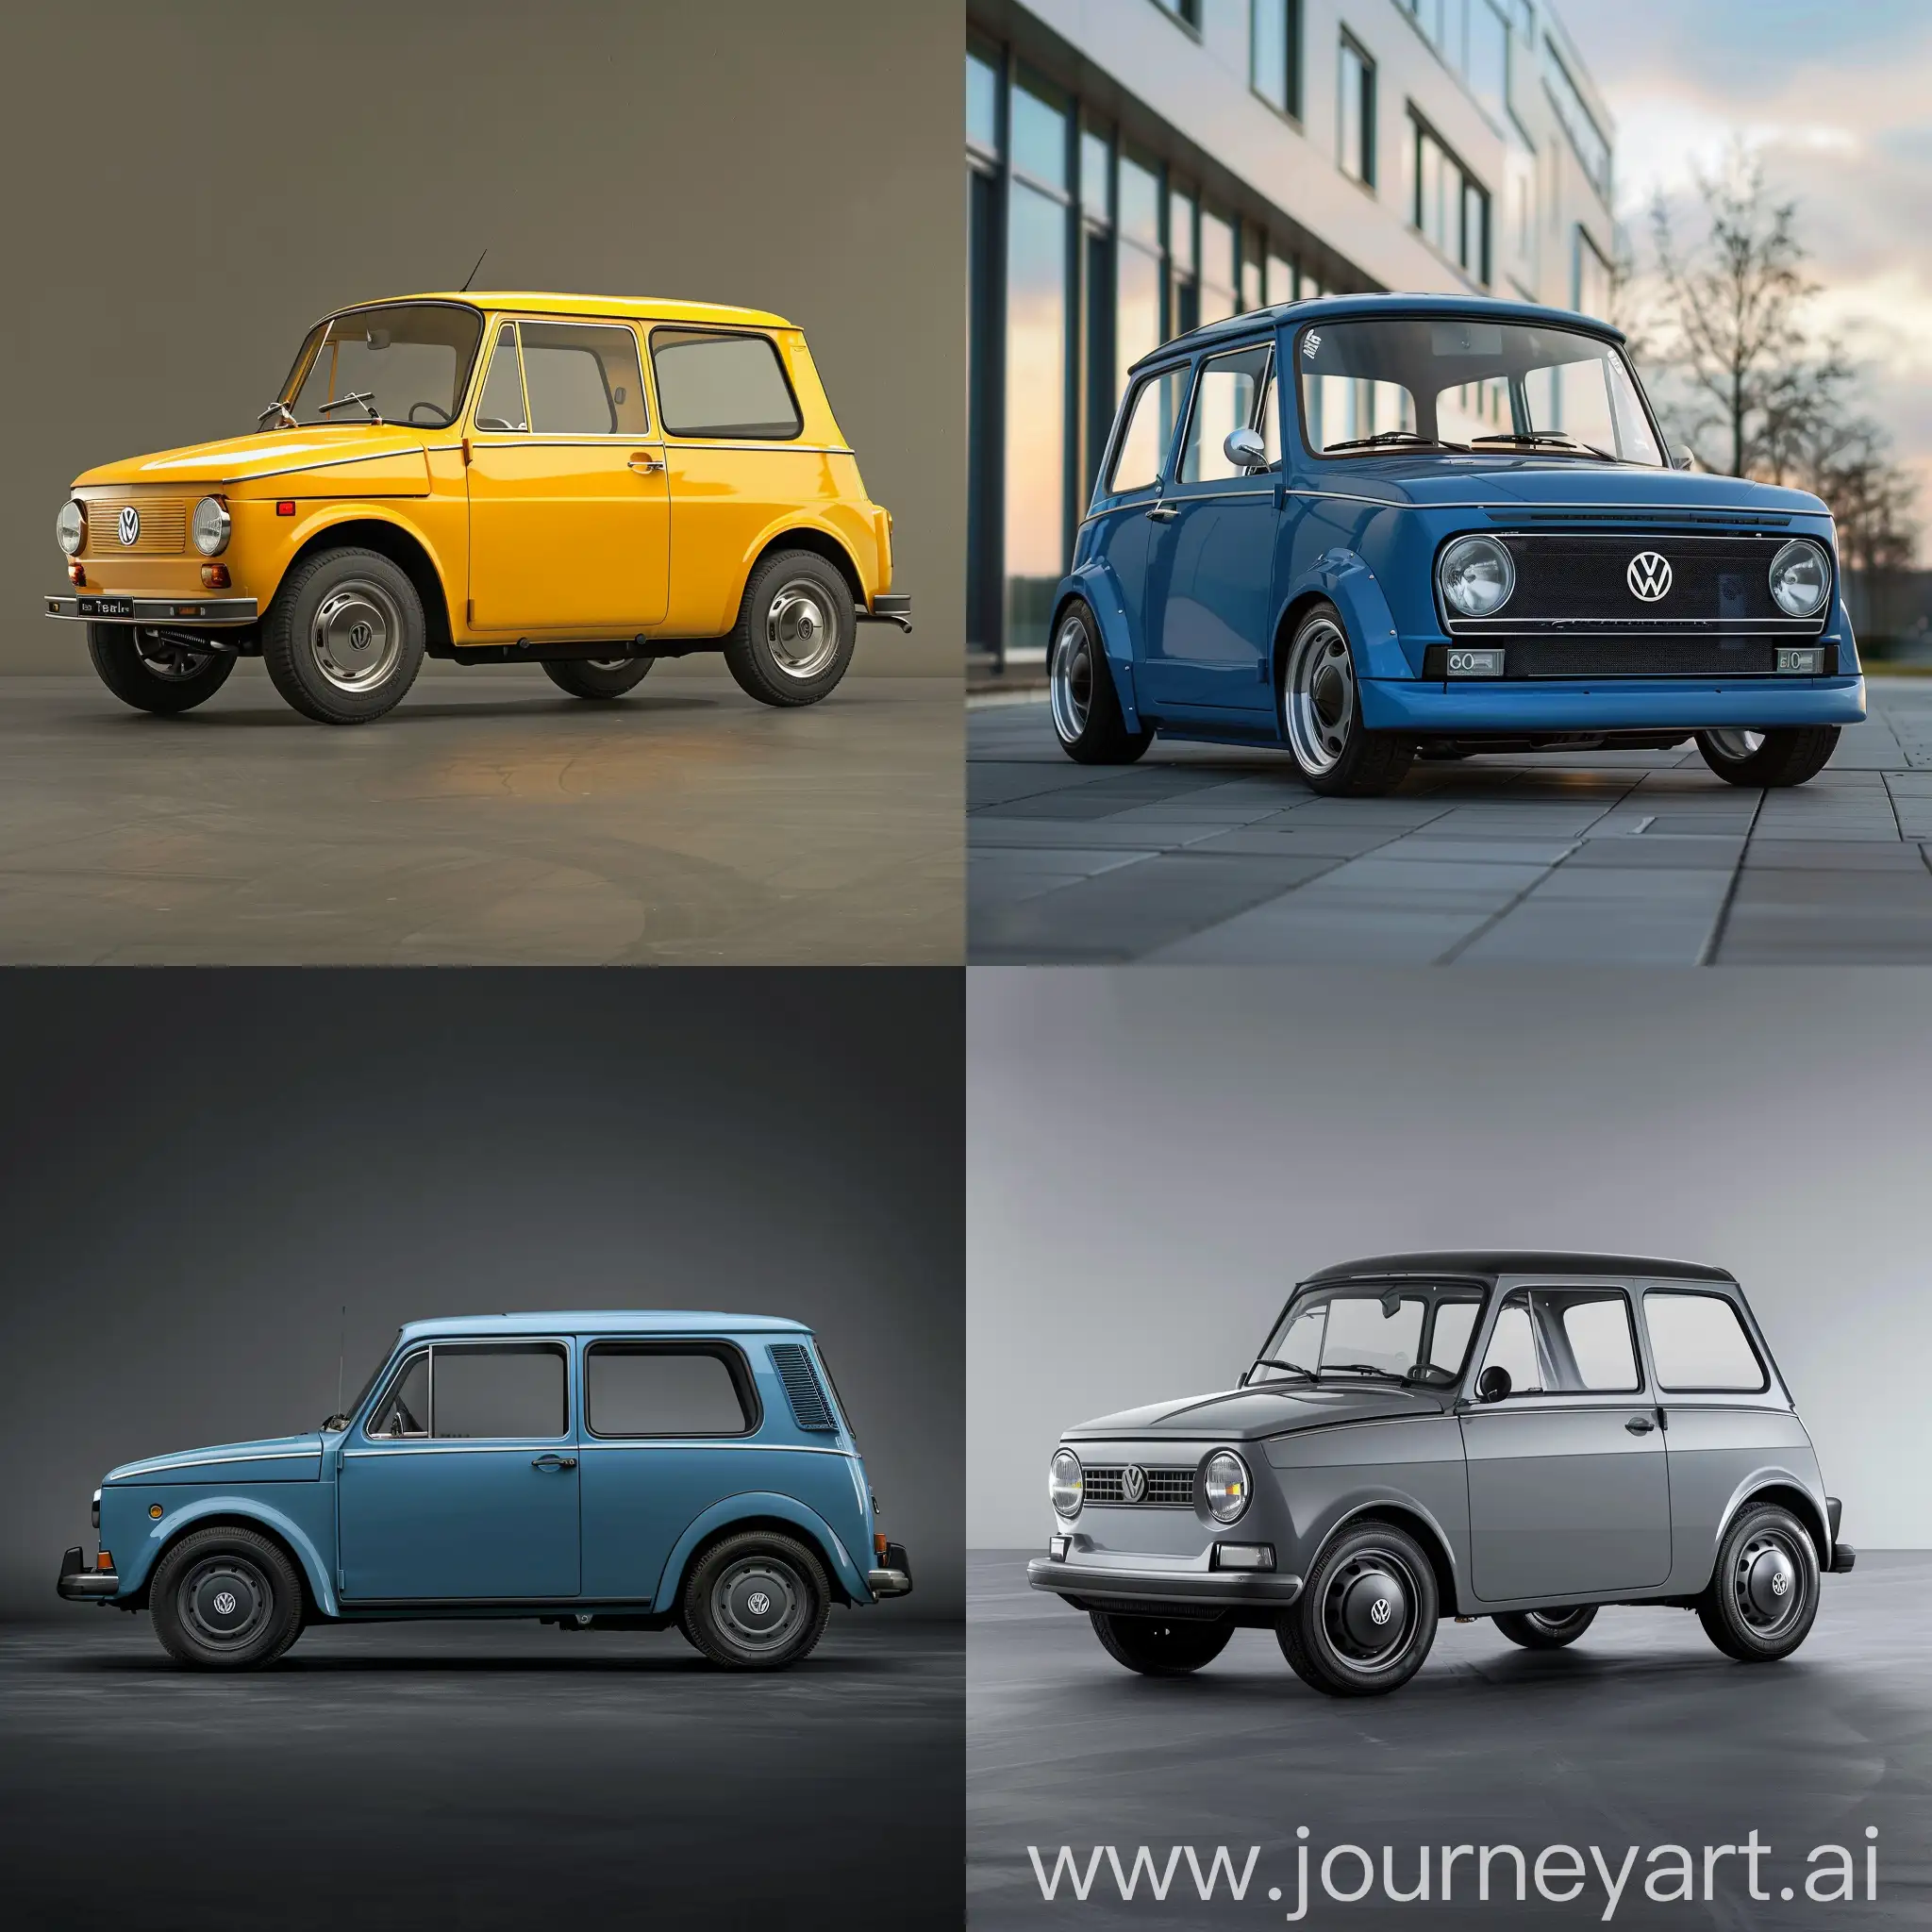 Vintage-Volkswagen-Trabant-601-Toy-Car-Model